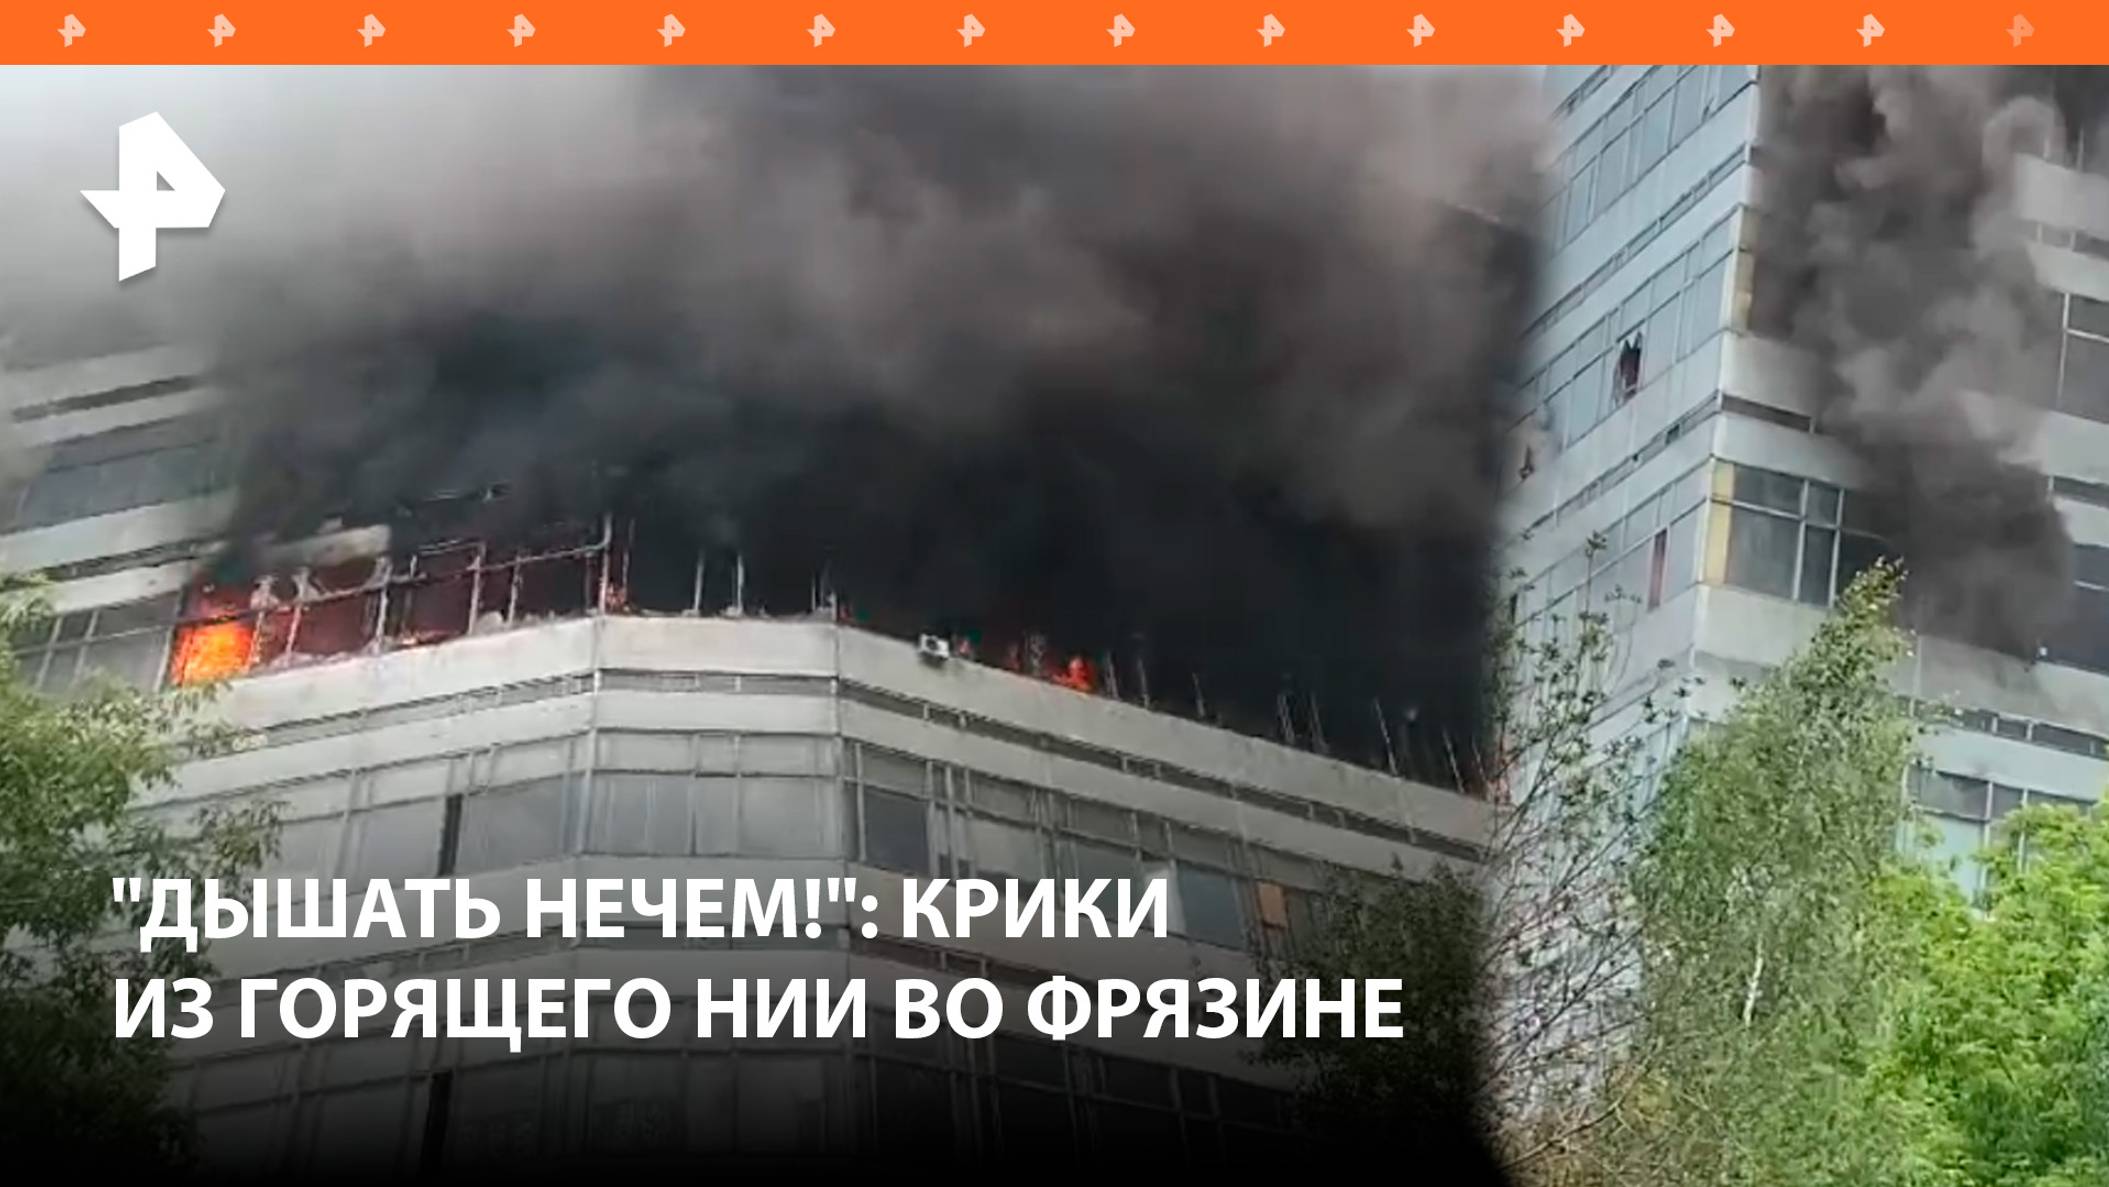 "Мужик там! Вообще труба!": люди охвачены огнем в НИИ во Фрязине